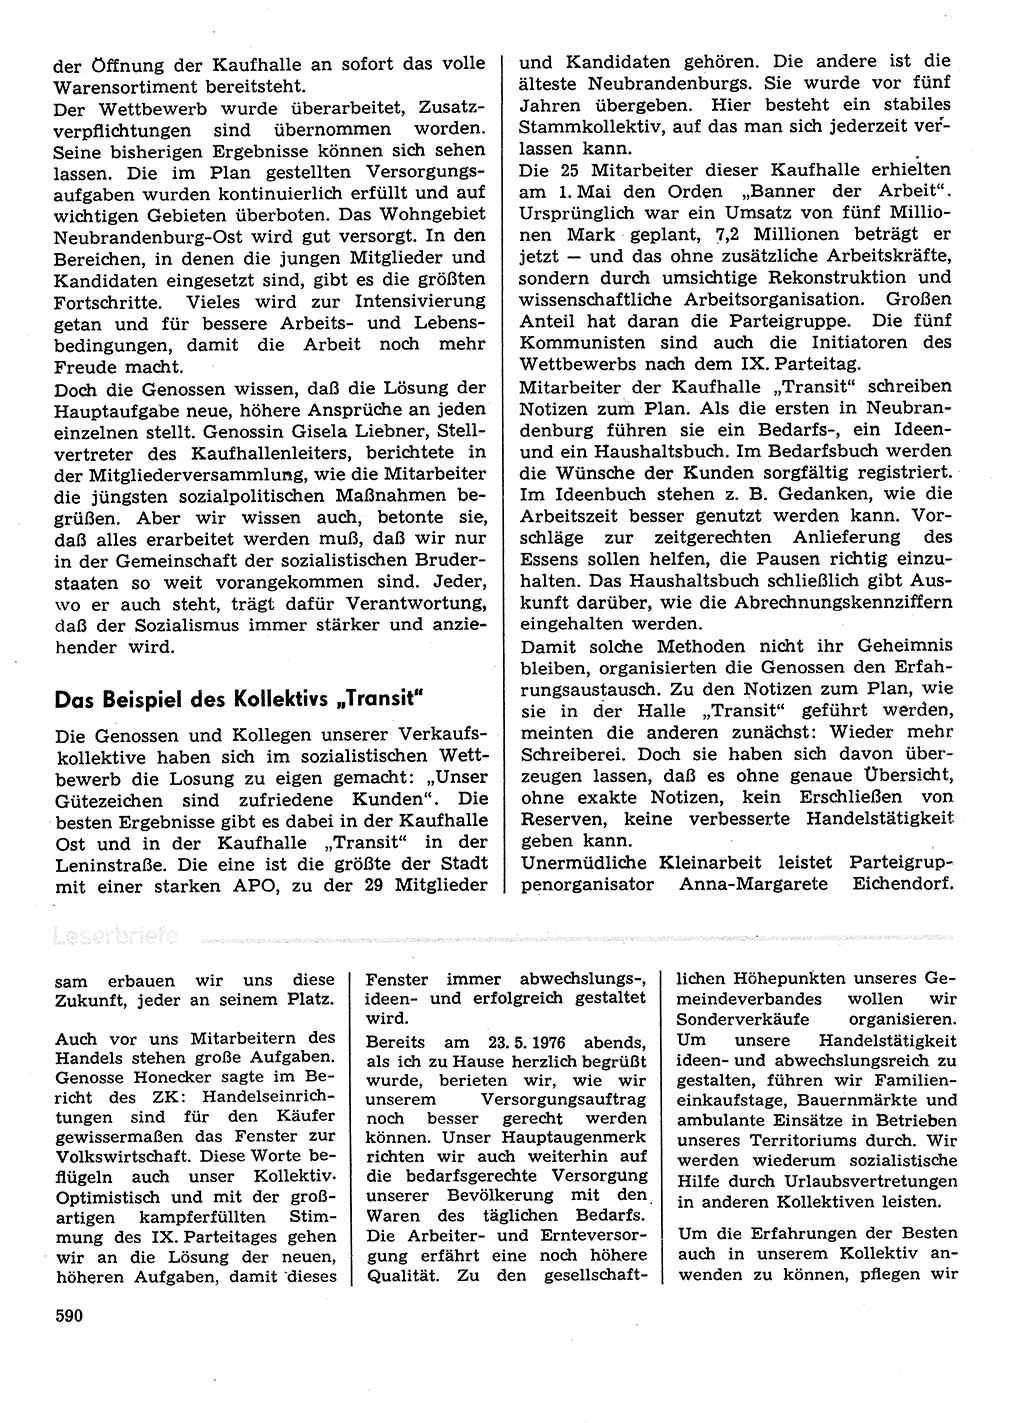 Neuer Weg (NW), Organ des Zentralkomitees (ZK) der SED (Sozialistische Einheitspartei Deutschlands) für Fragen des Parteilebens, 31. Jahrgang [Deutsche Demokratische Republik (DDR)] 1976, Seite 590 (NW ZK SED DDR 1976, S. 590)